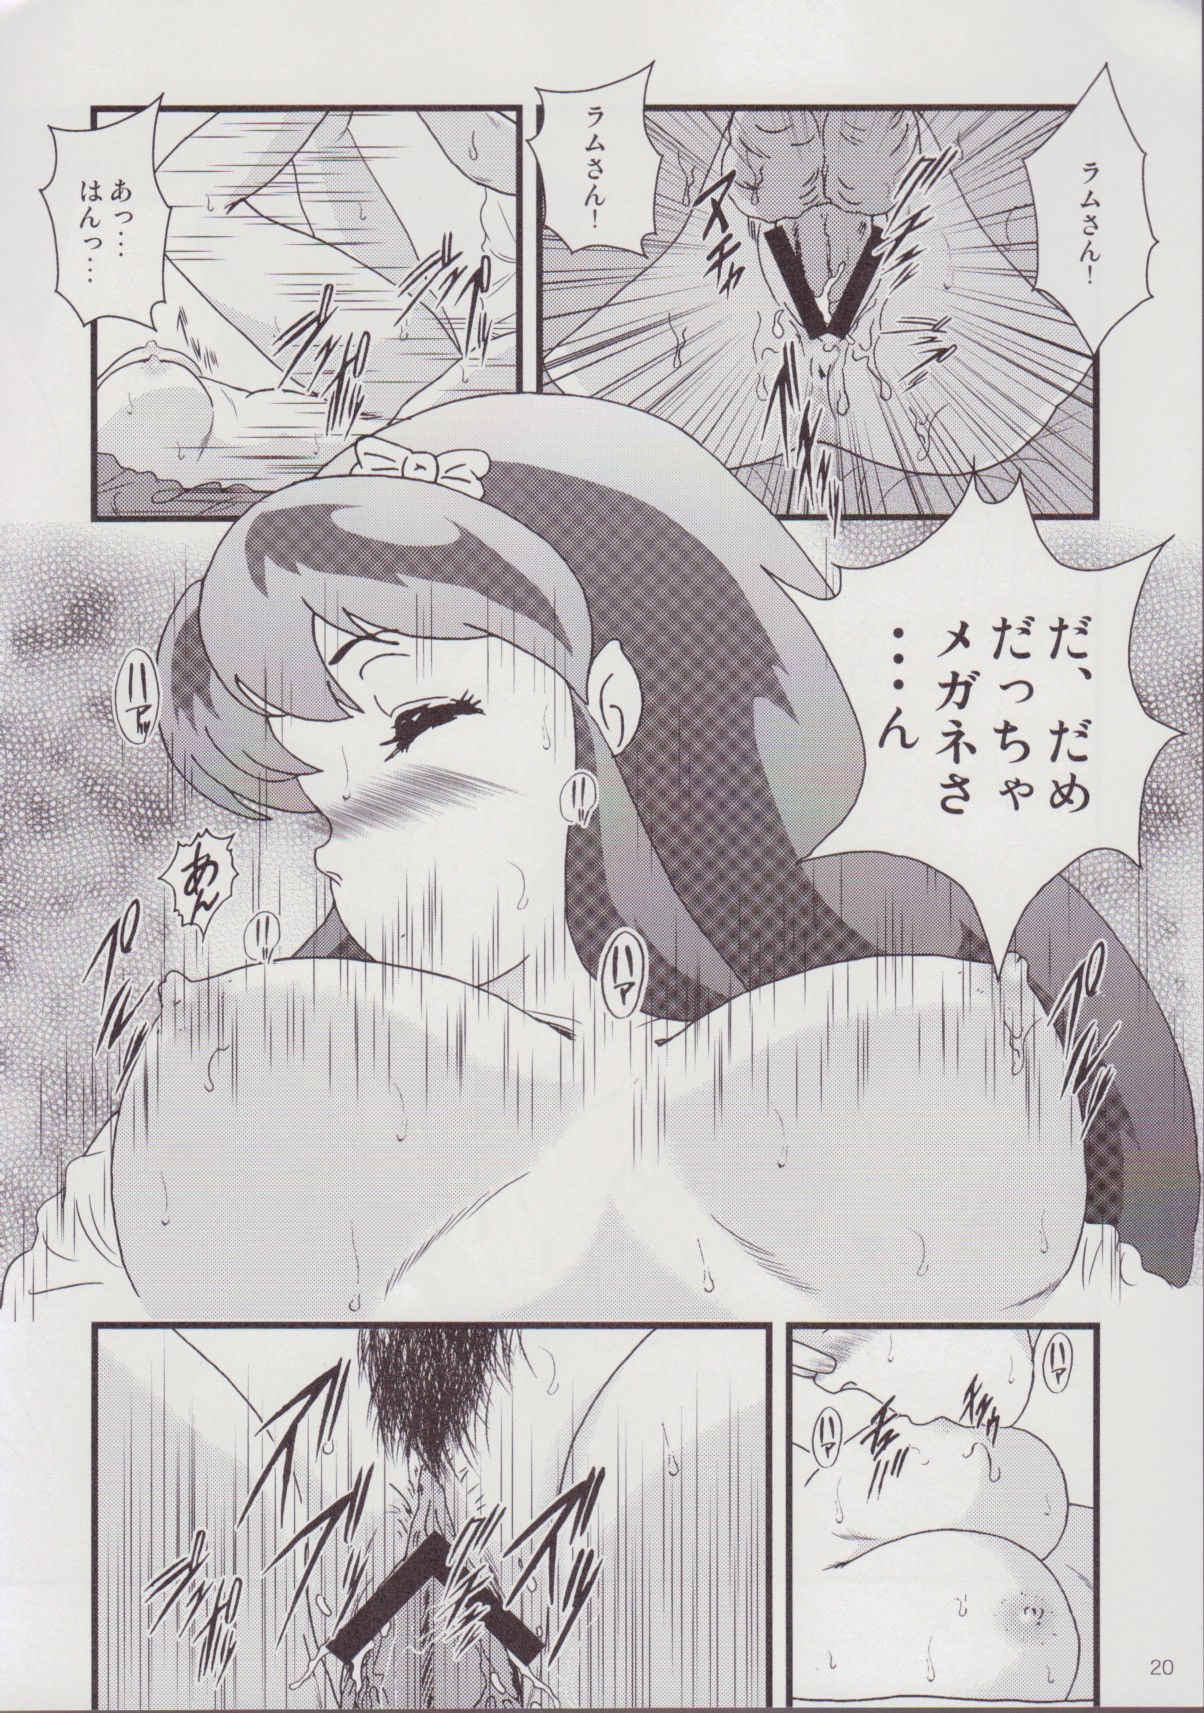 (C78) [KAIGETSUDOU (Jigoku Sensei Hirobe~)] Fairy9 (Urusei Yatsura) [2nd Edition 2012-12-31] (C78) [海月堂 (地獄先生ひろべ～)] Fairy9 (うる星やつら) [再販 2012年12月31日]